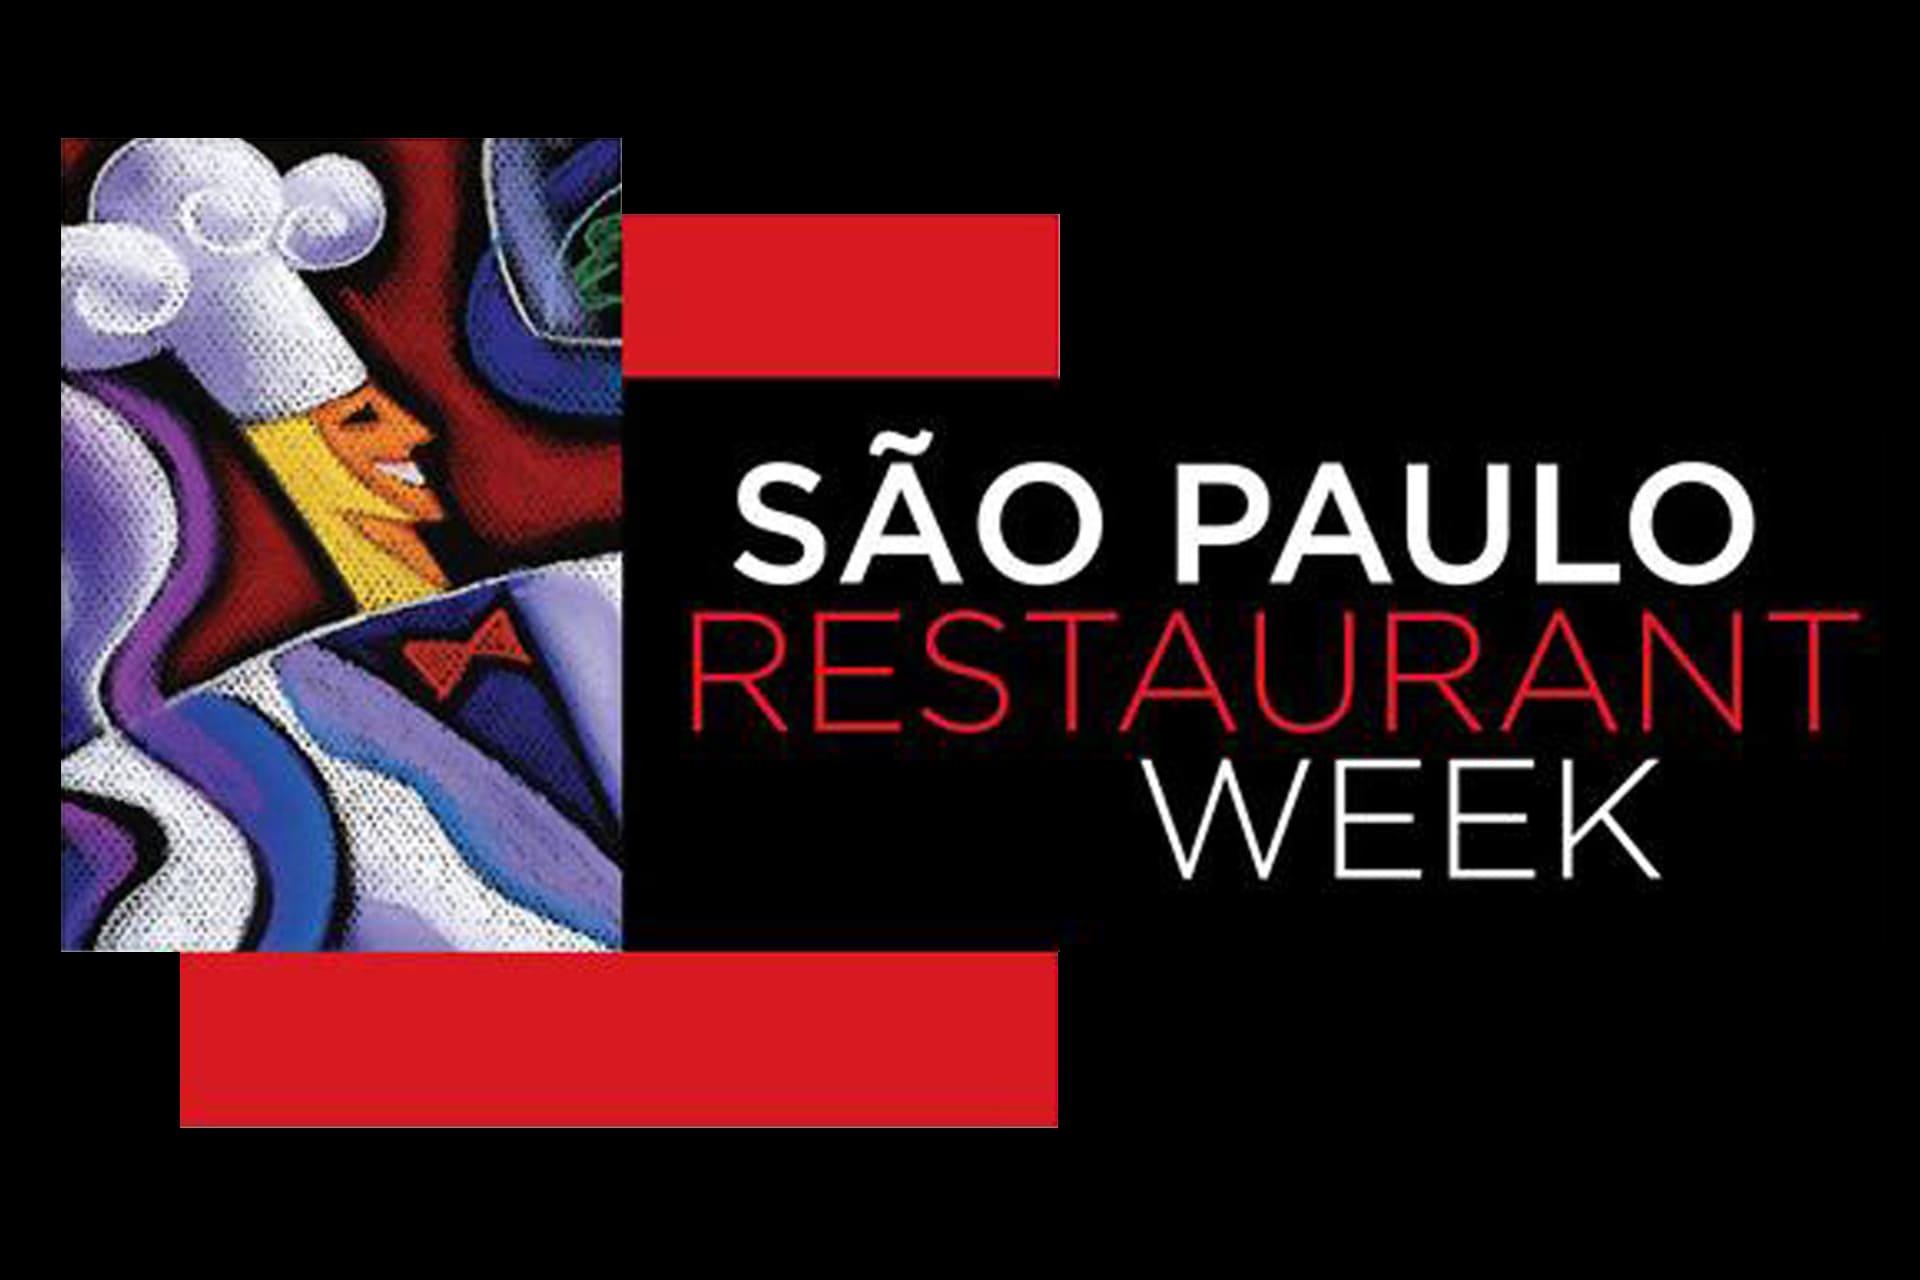 Restaurante Week já começou, em São Paulo e em outras cidades